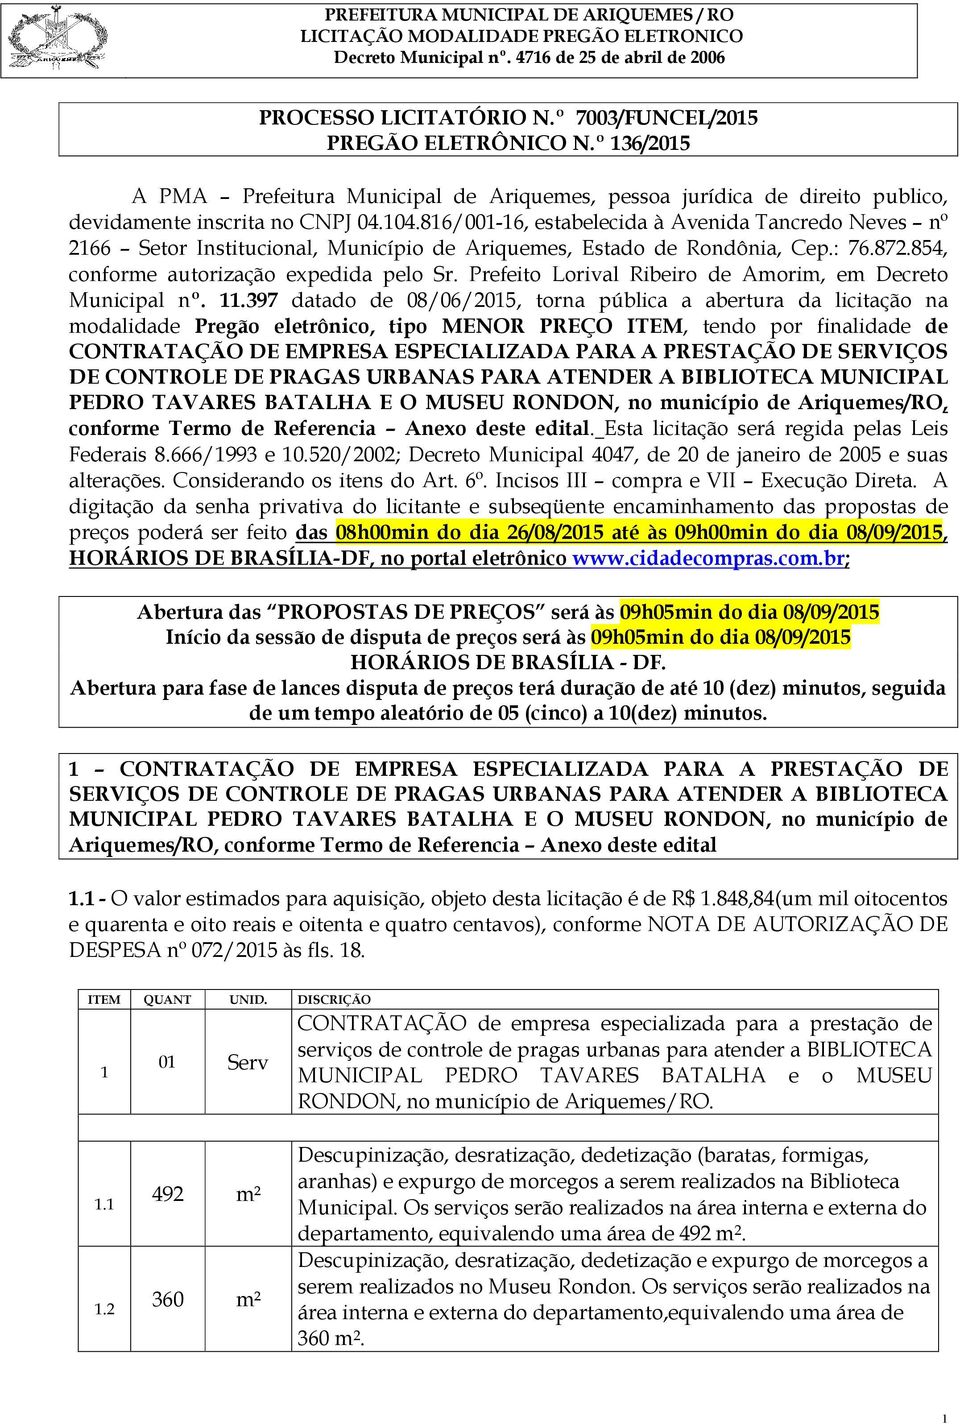 Prefeito Lorival Ribeiro de Amorim, em Decreto Municipal nº. 11.